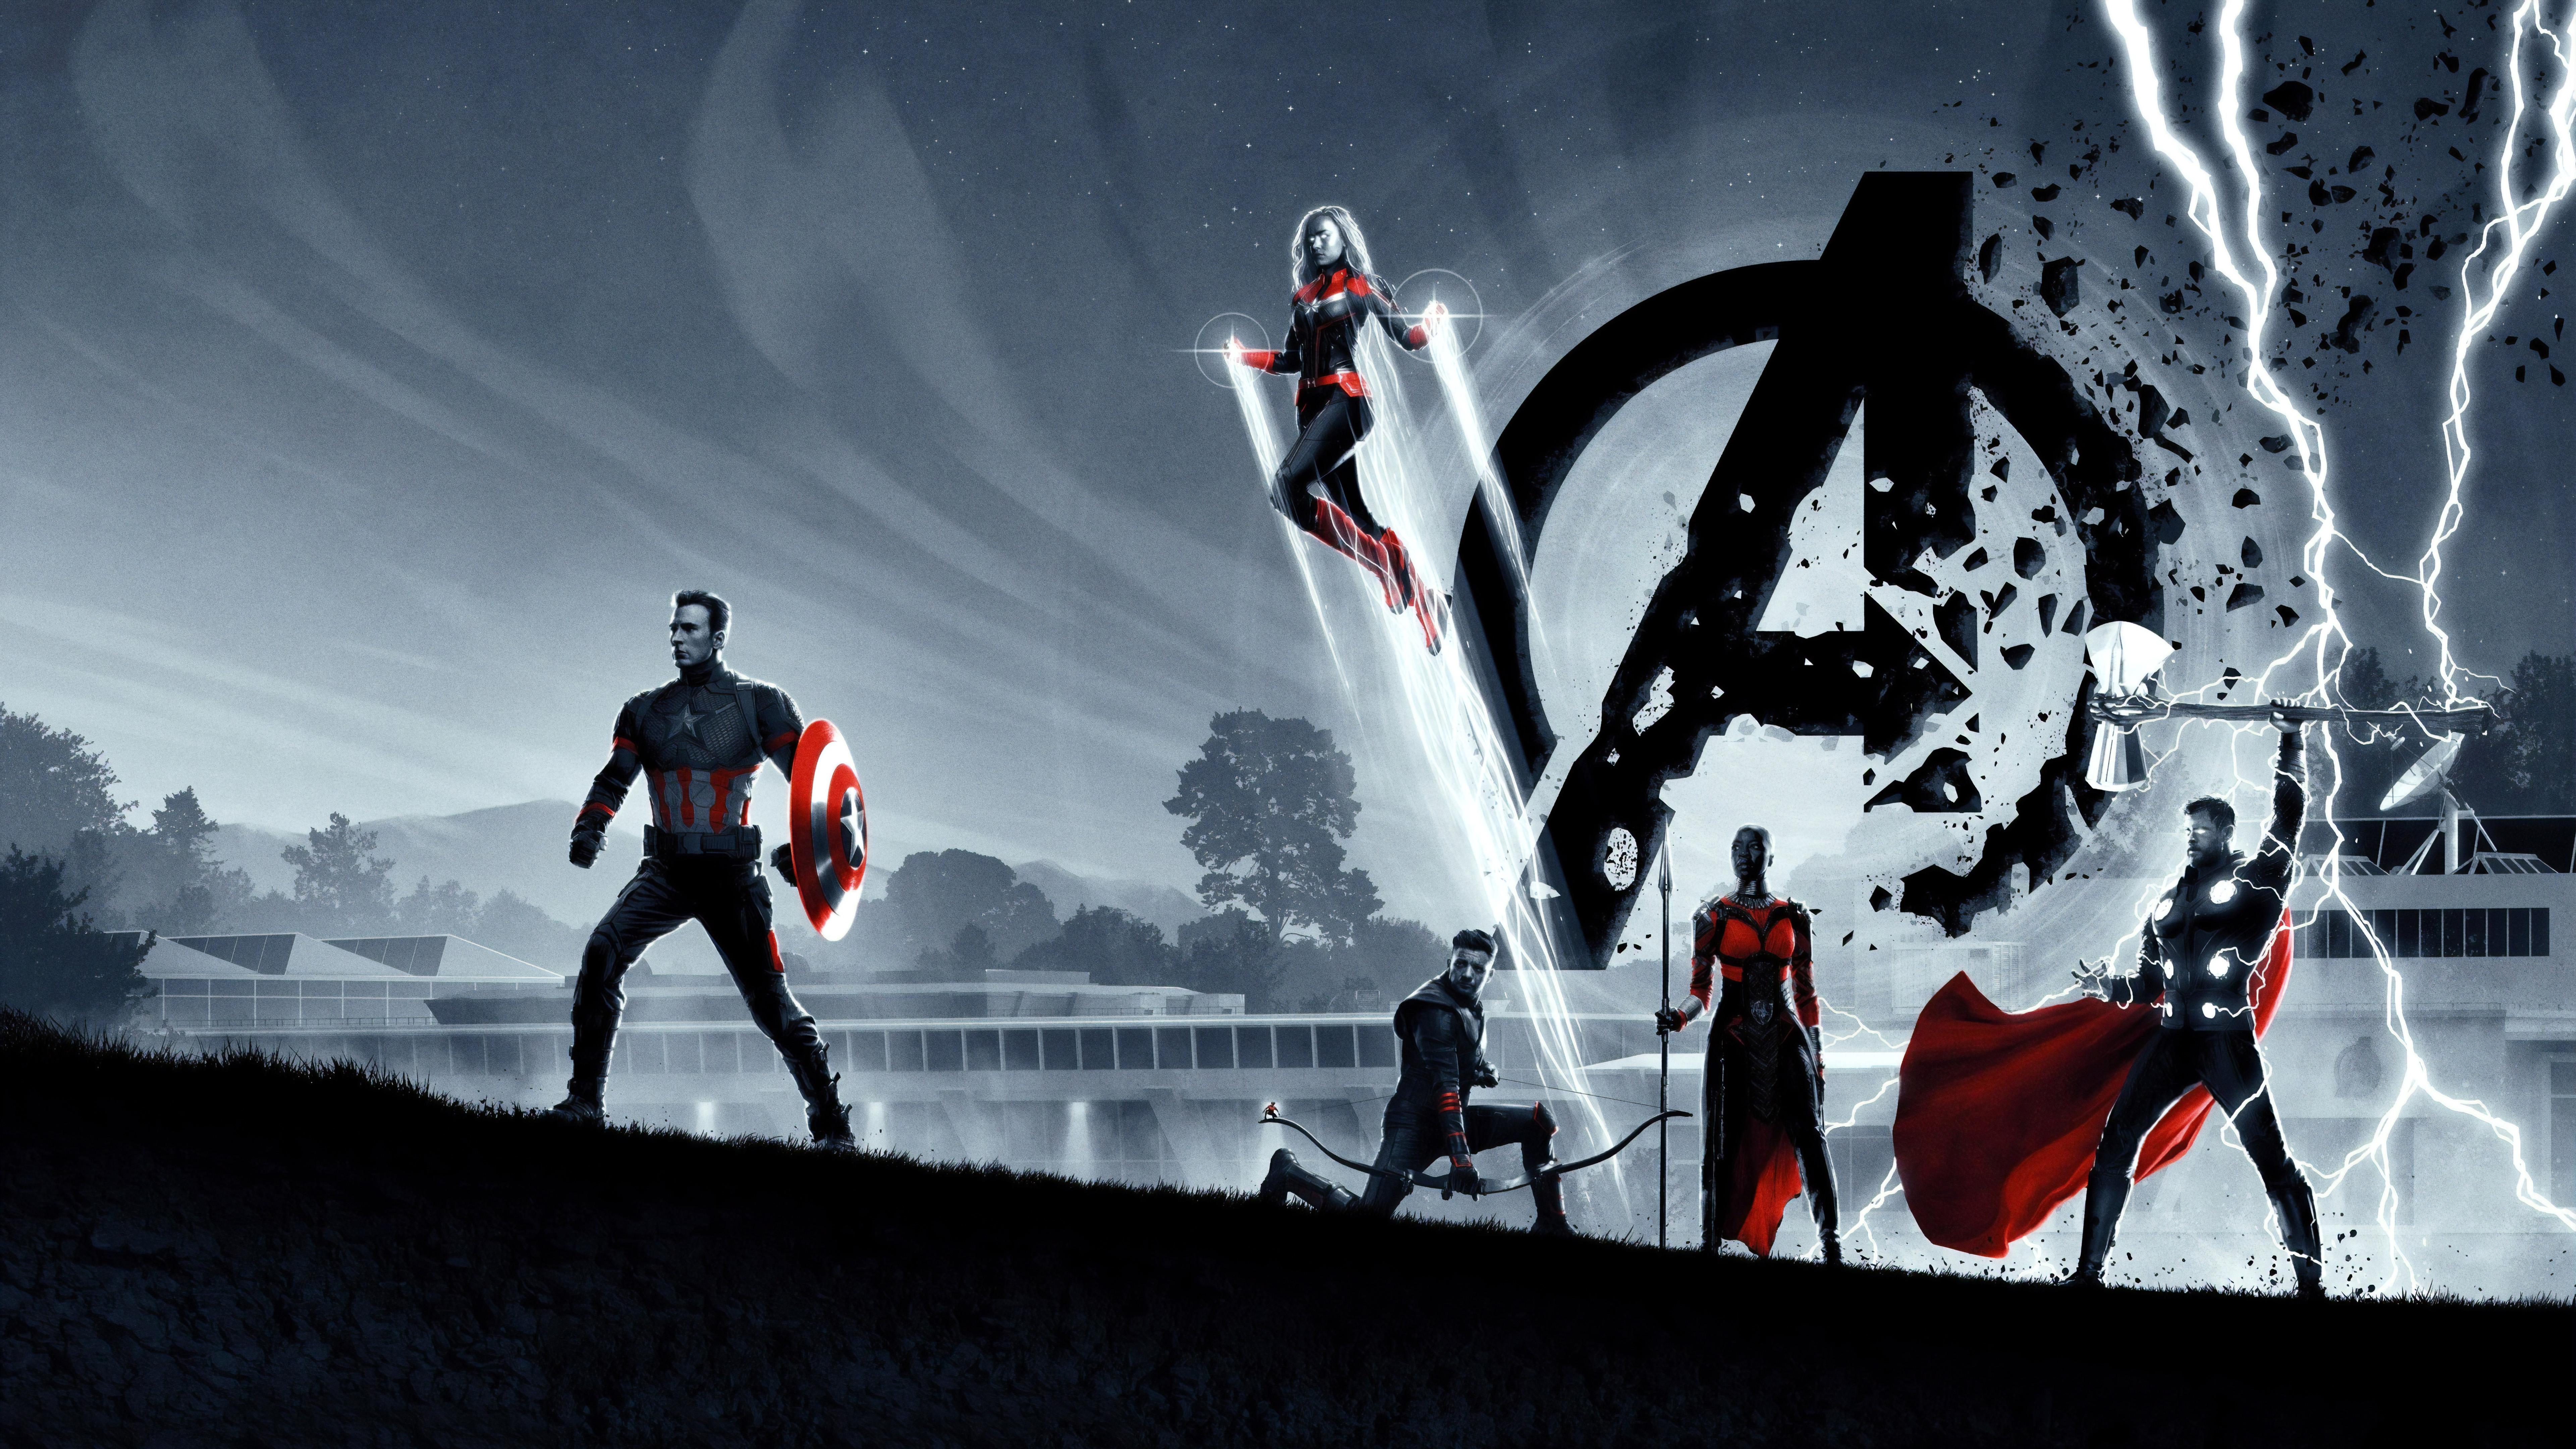 Captain America Avengers Endgame 4K 8K Wallpaper. HD